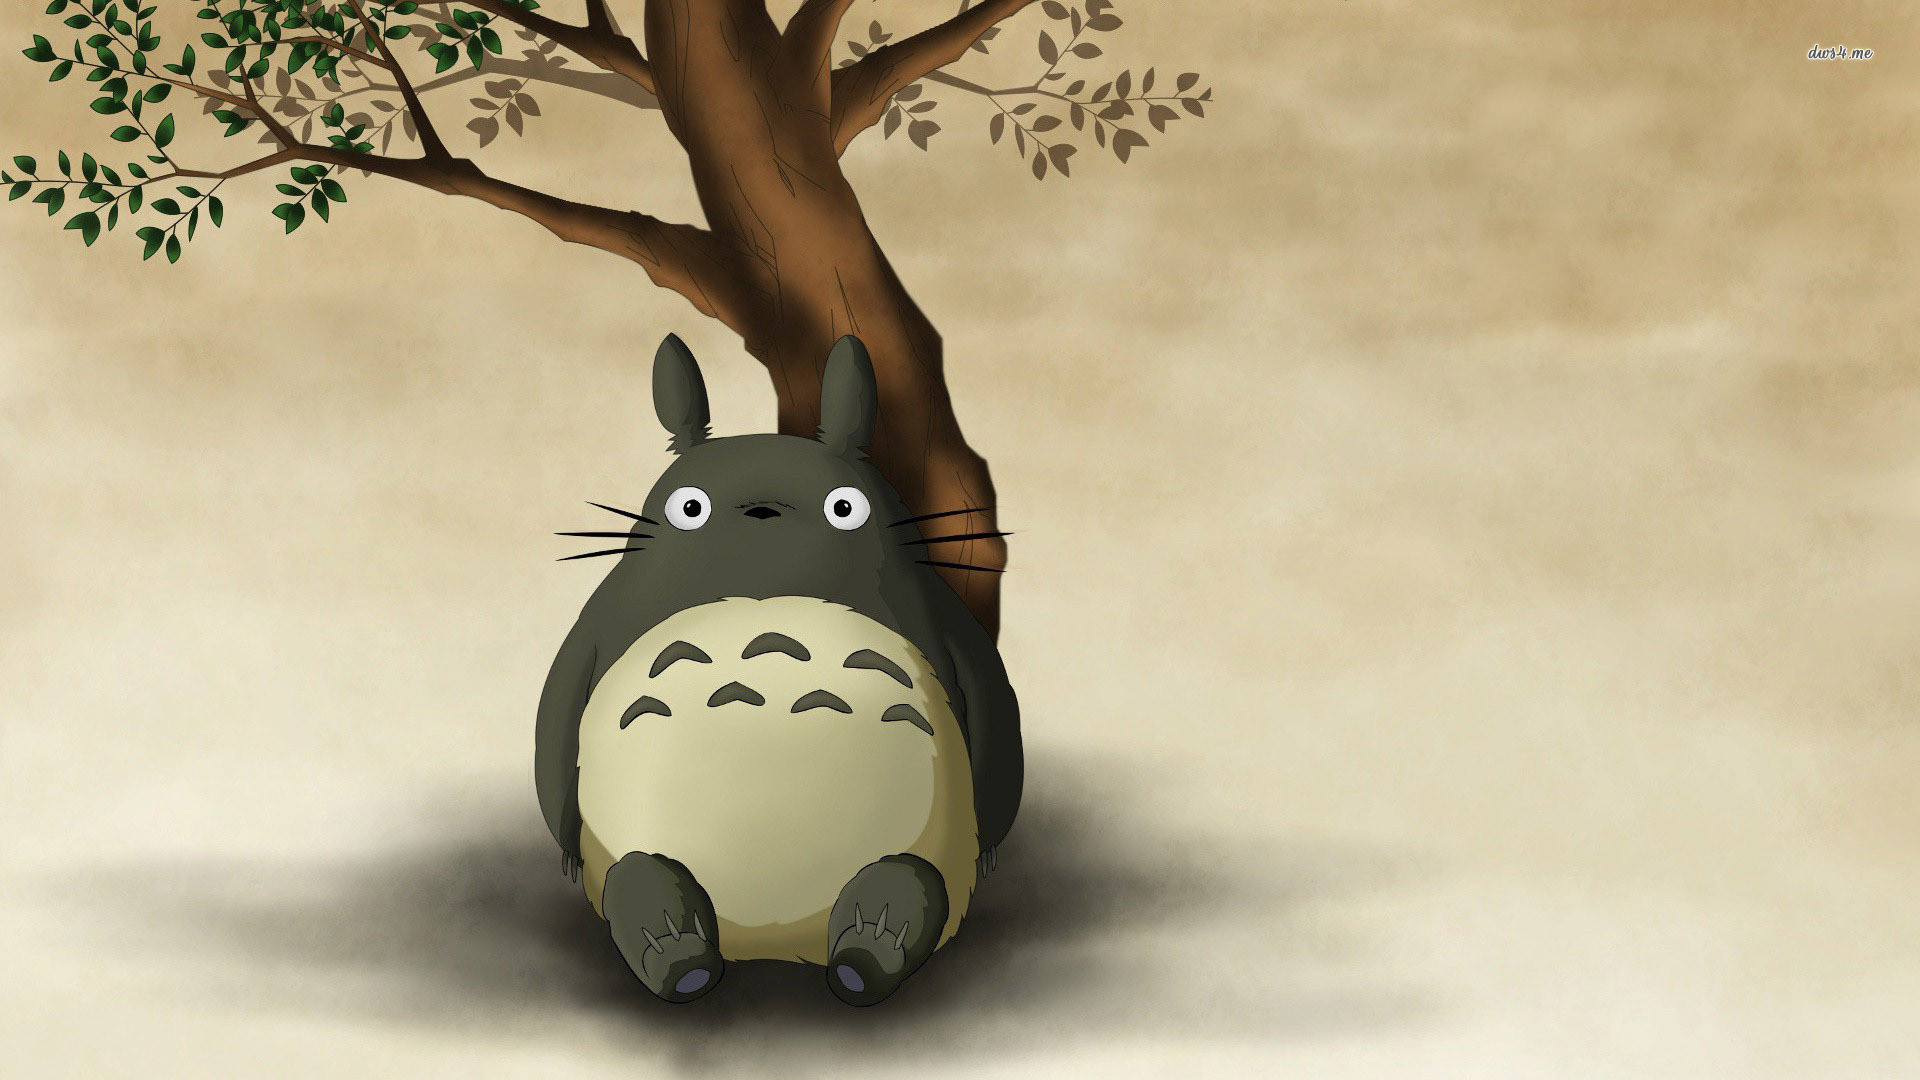 1920x1080 Film - My Neighbor Totoro Totoro (My Neighbor Totoro) Bakgrund